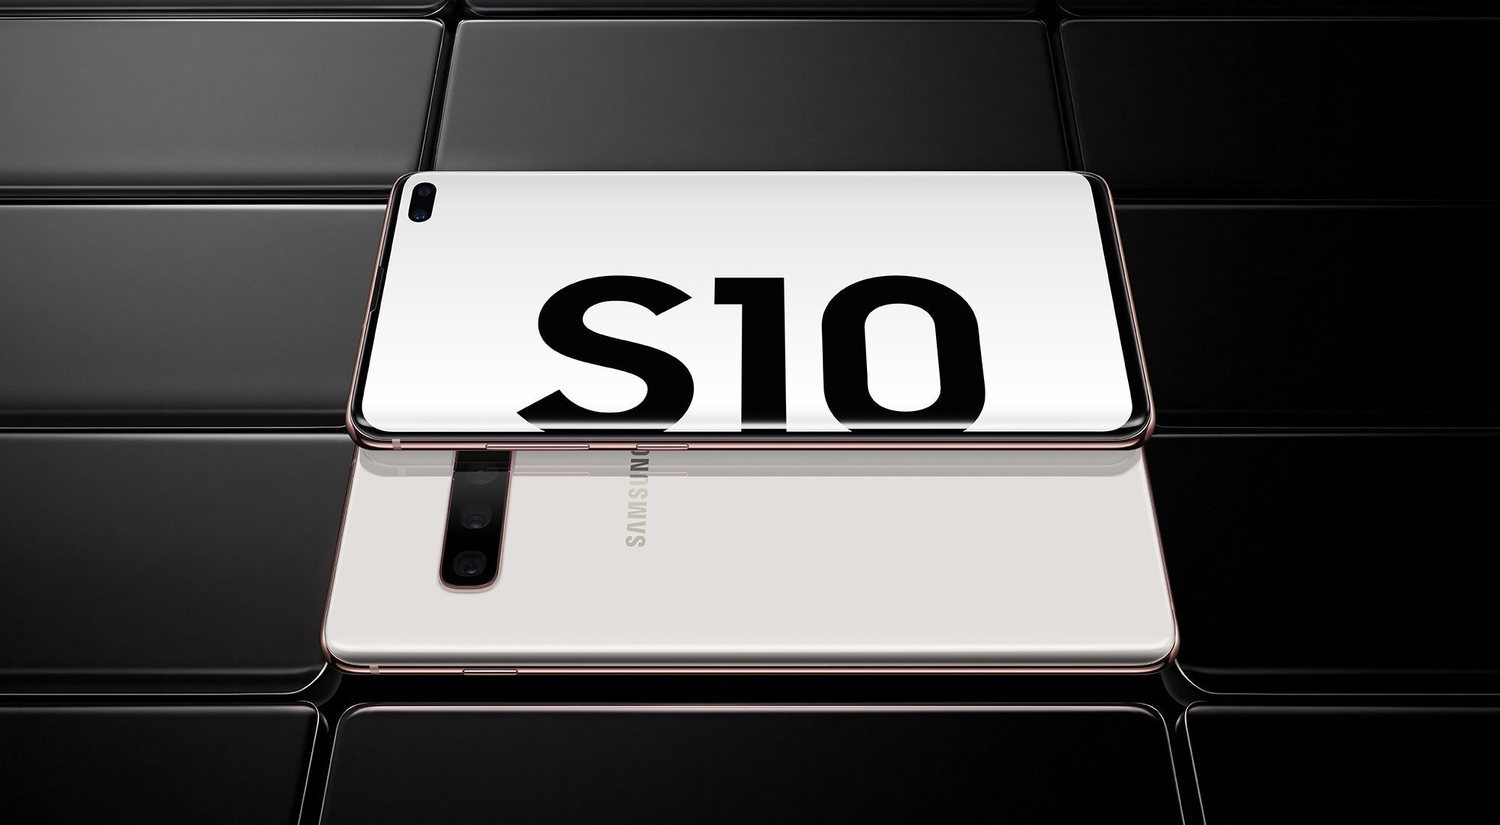 Samsung Galaxy S10+: características y precio de la joya de la corona de Samsung